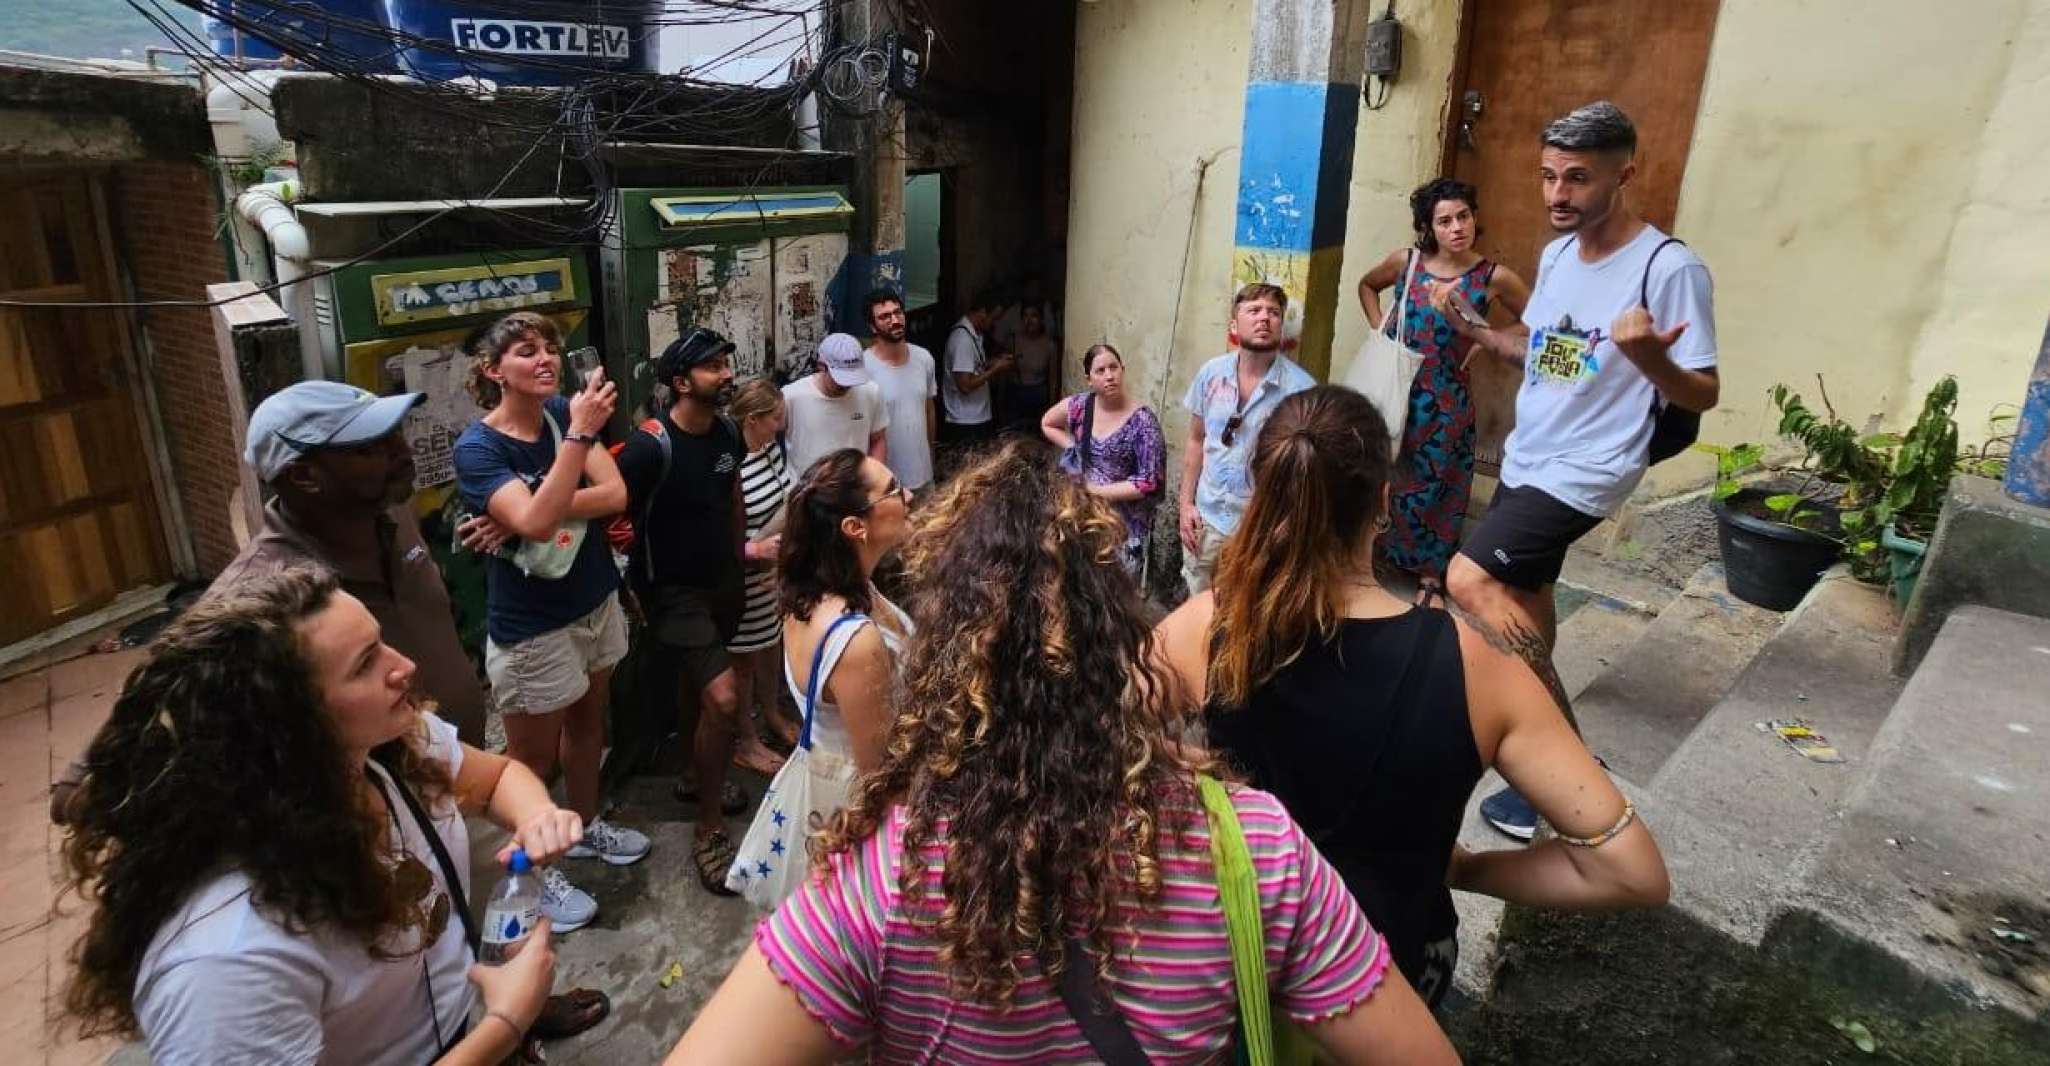 Rio de Janeiro, Favela Santa Marta Tour with a Local Guide - Housity